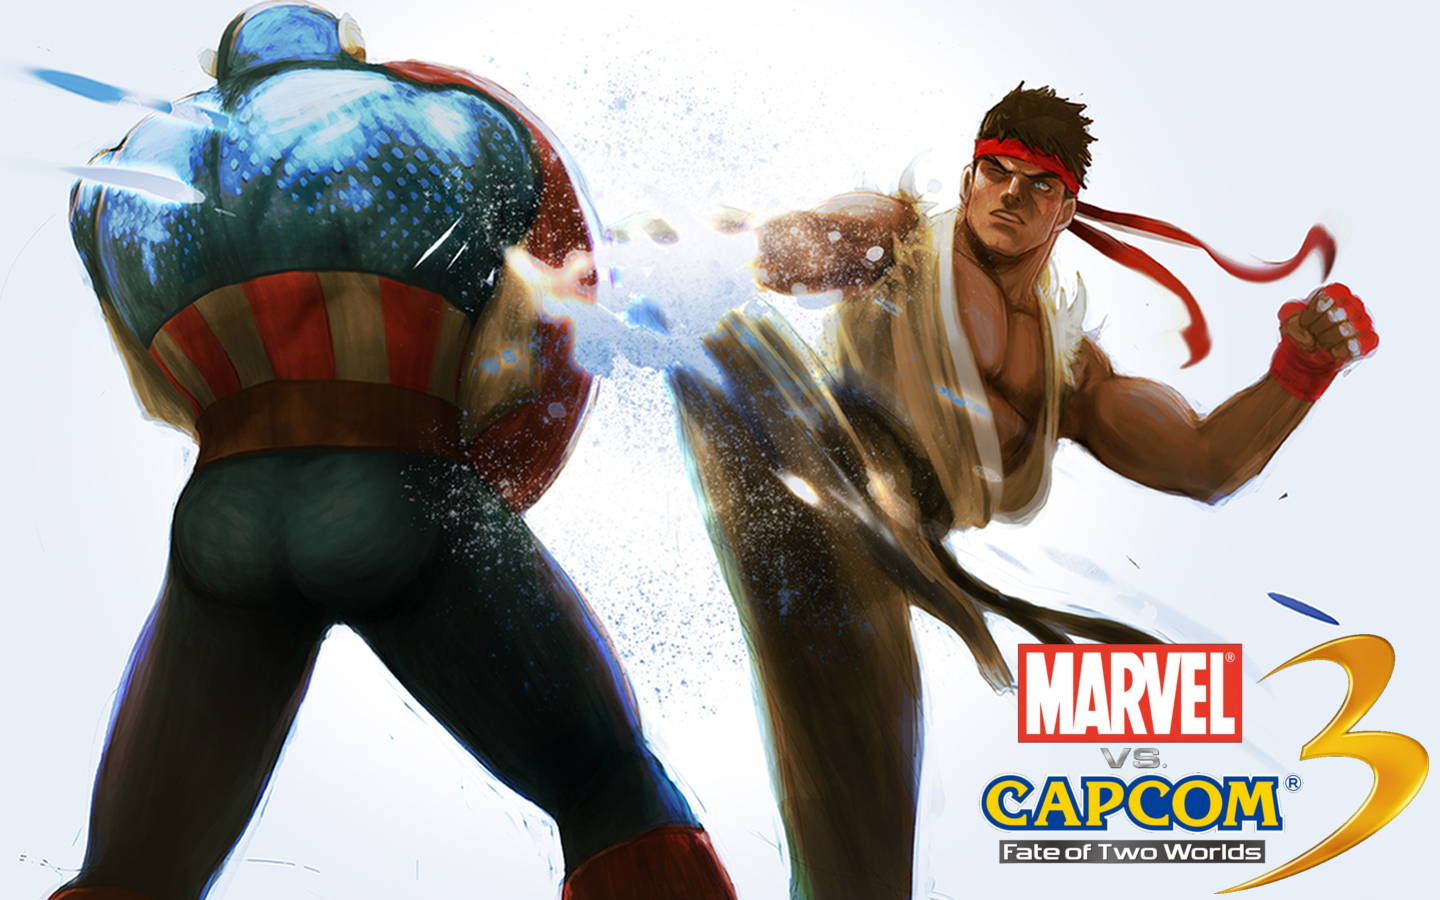 Marvel Vs Capcom Ryu Action Figure - HD Wallpaper 